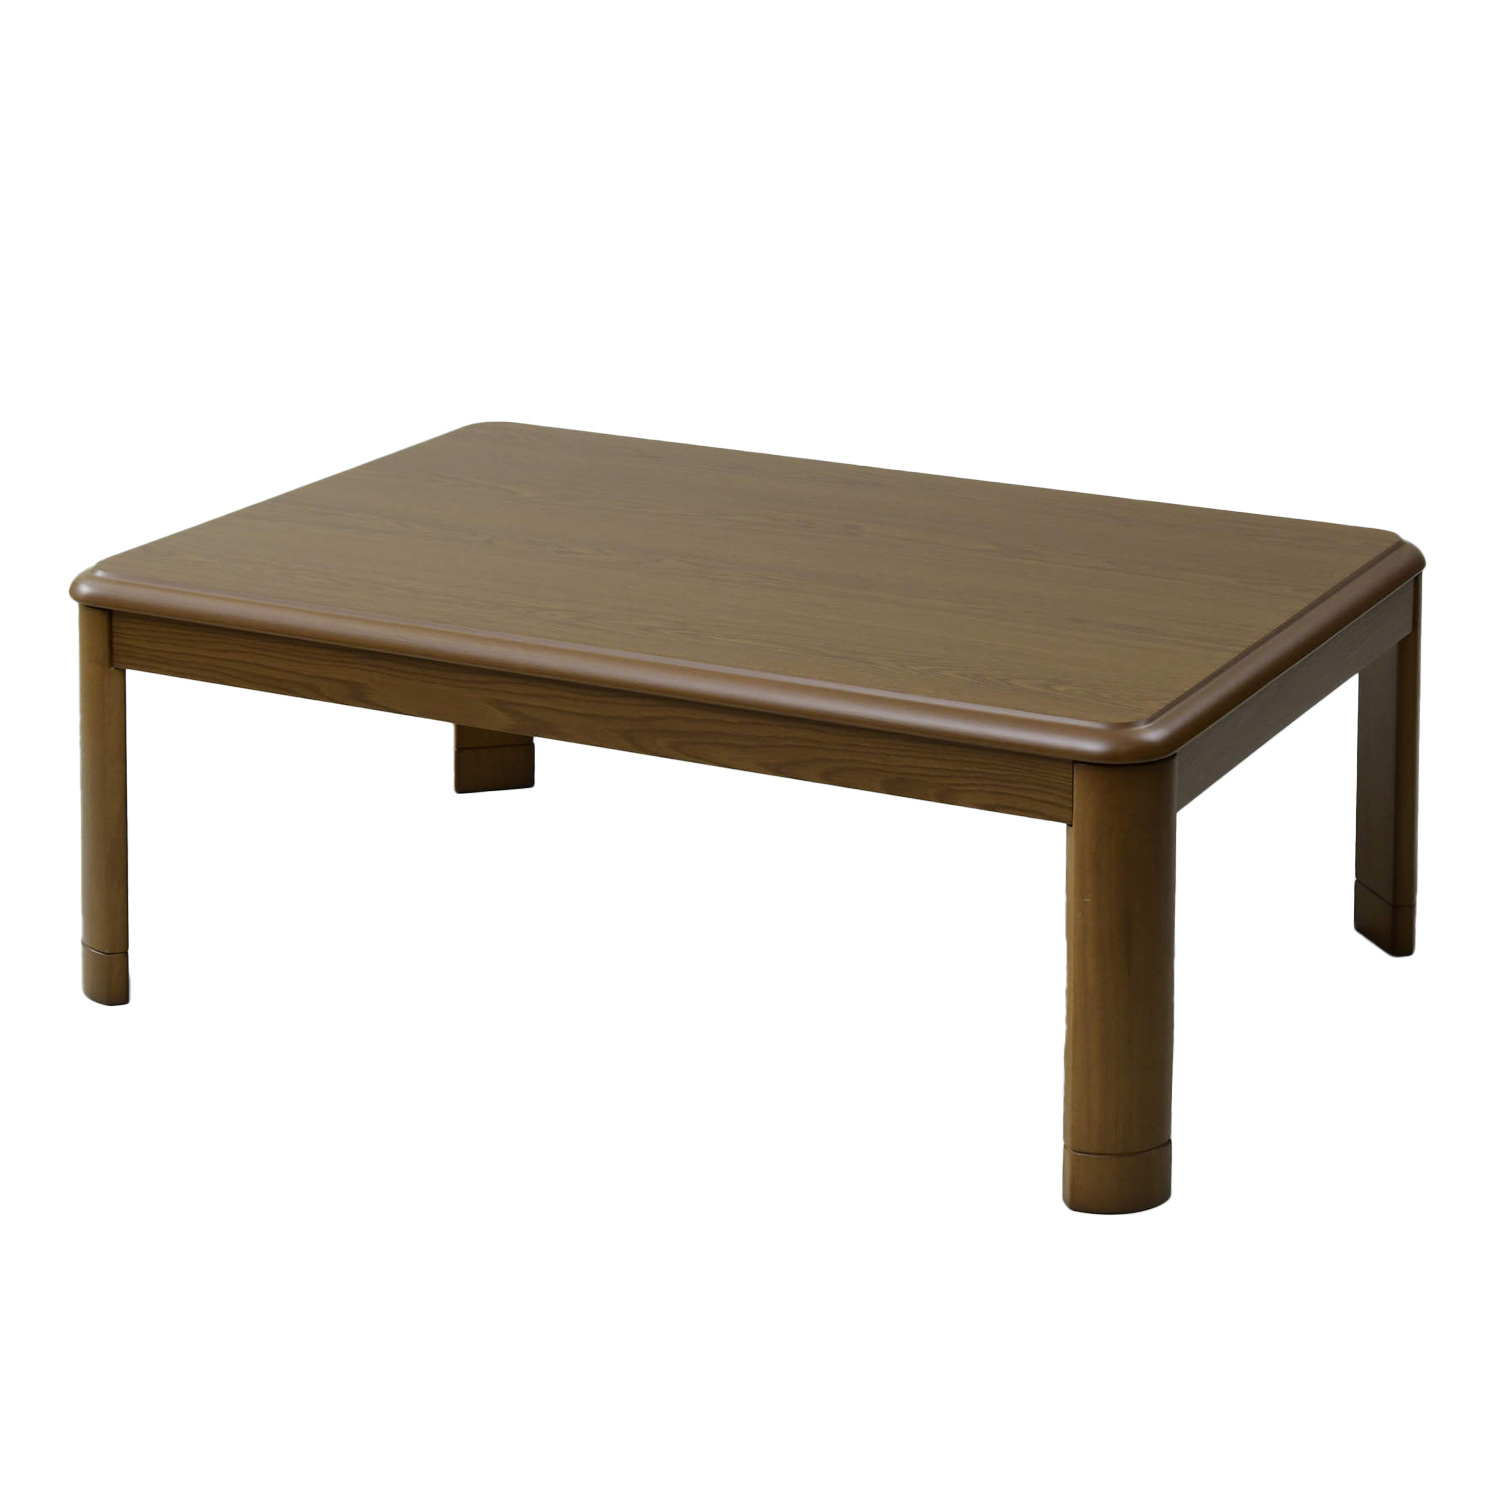 こたつ こたつテーブル 家具調こたつ おしゃれ 山善 長方形 105x75 高さ調節 テーブル 机 こたつヒーター